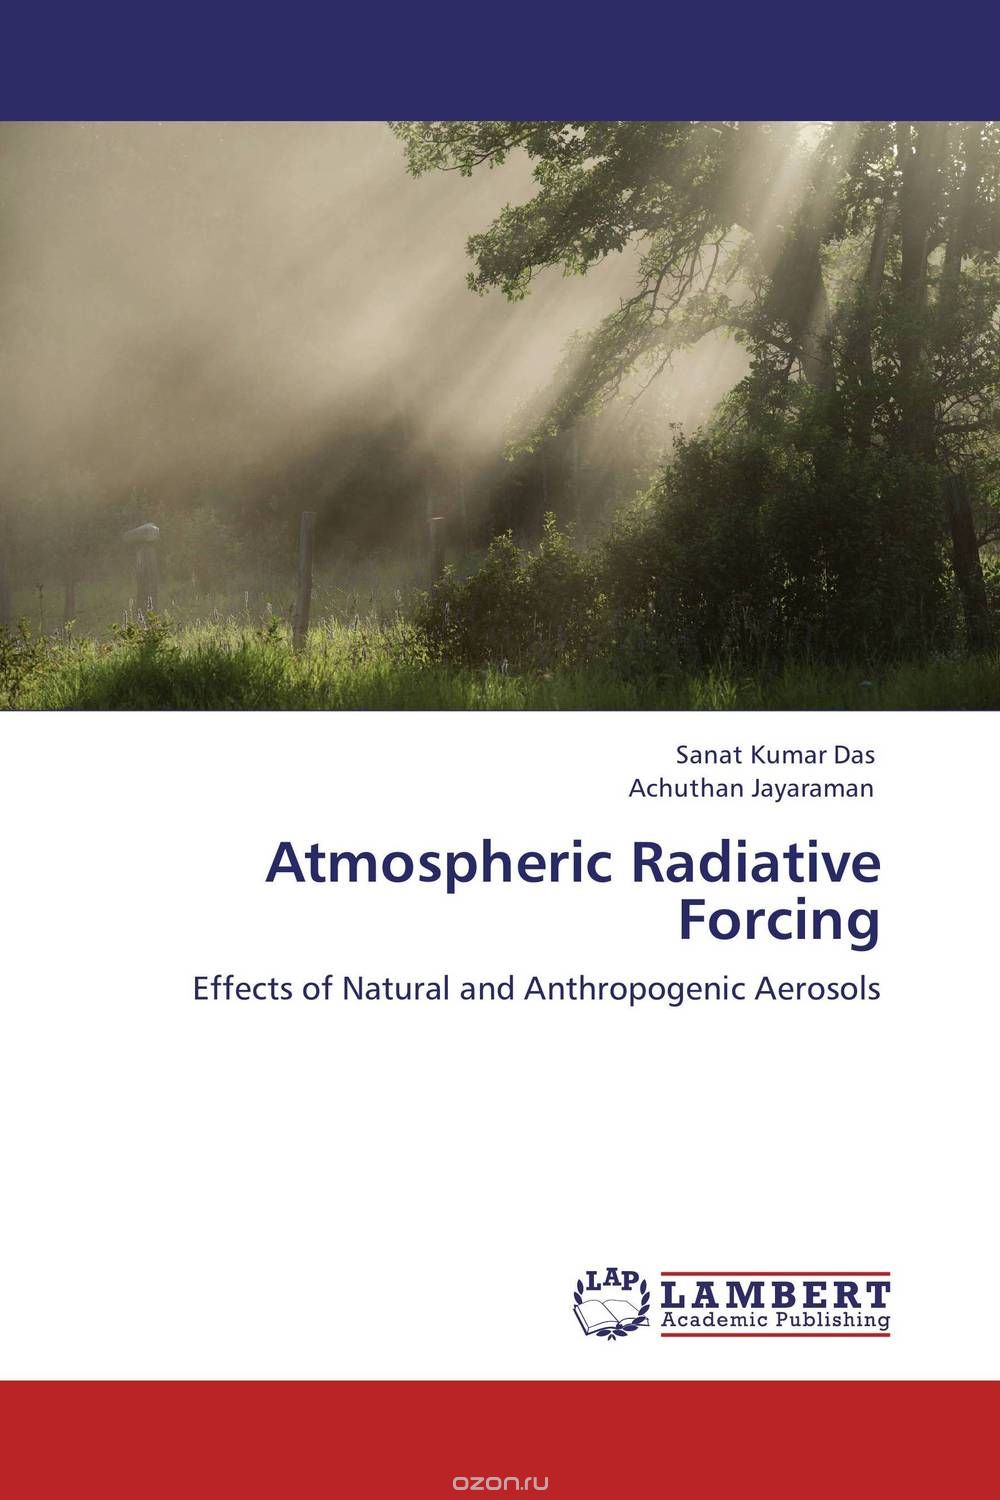 Скачать книгу "Atmospheric Radiative Forcing"